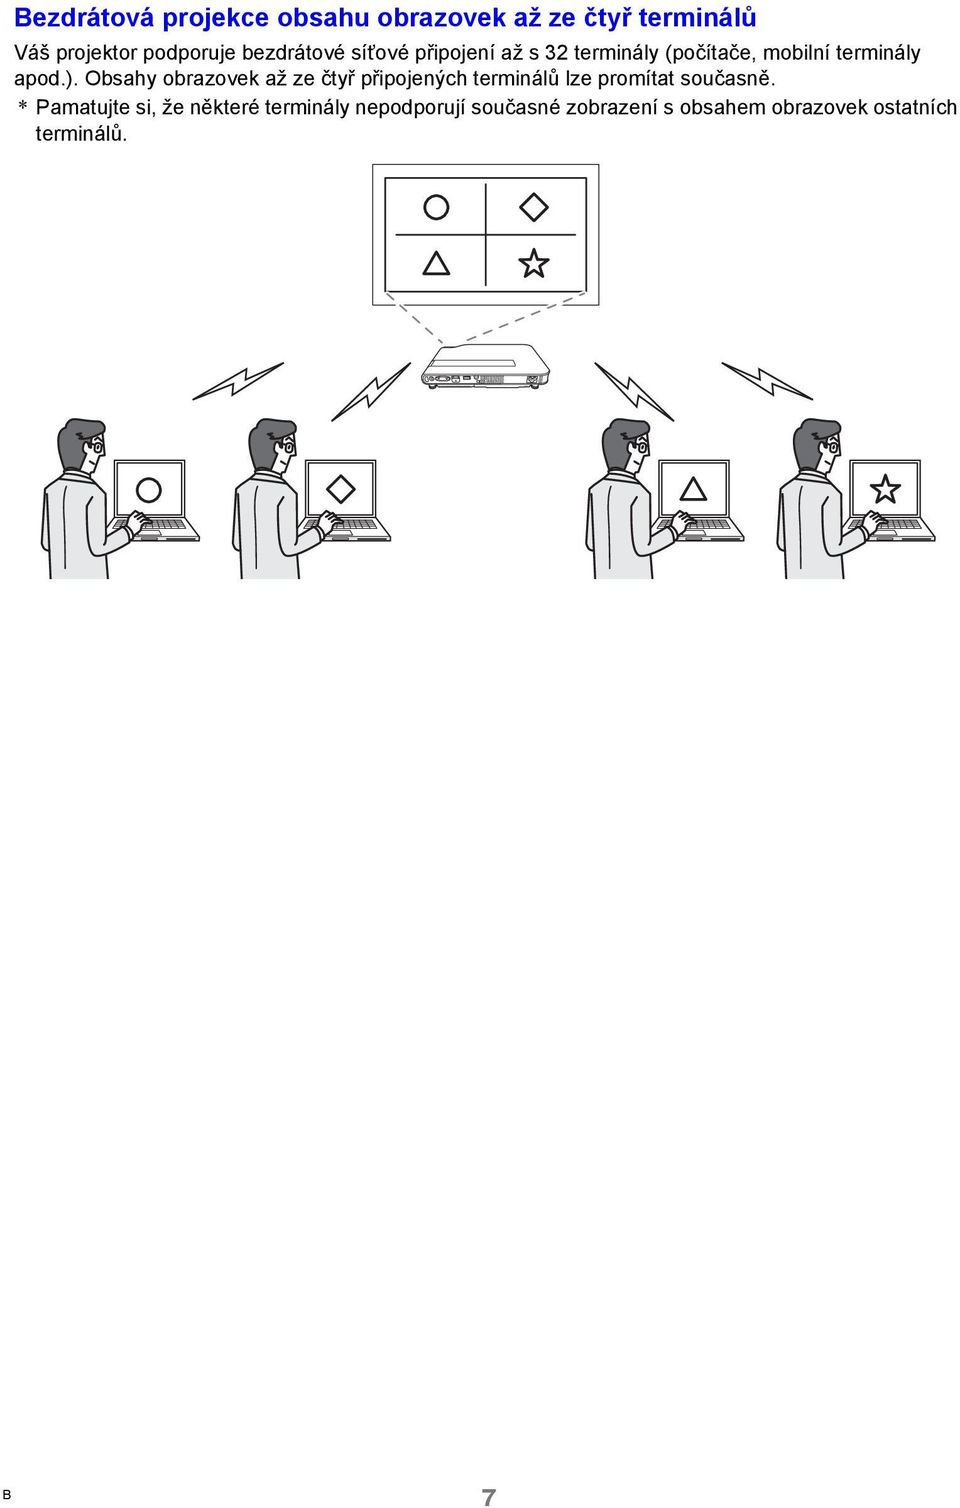 Obsahy obrazovek až ze čtyř připojených terminálů lze promítat současně.